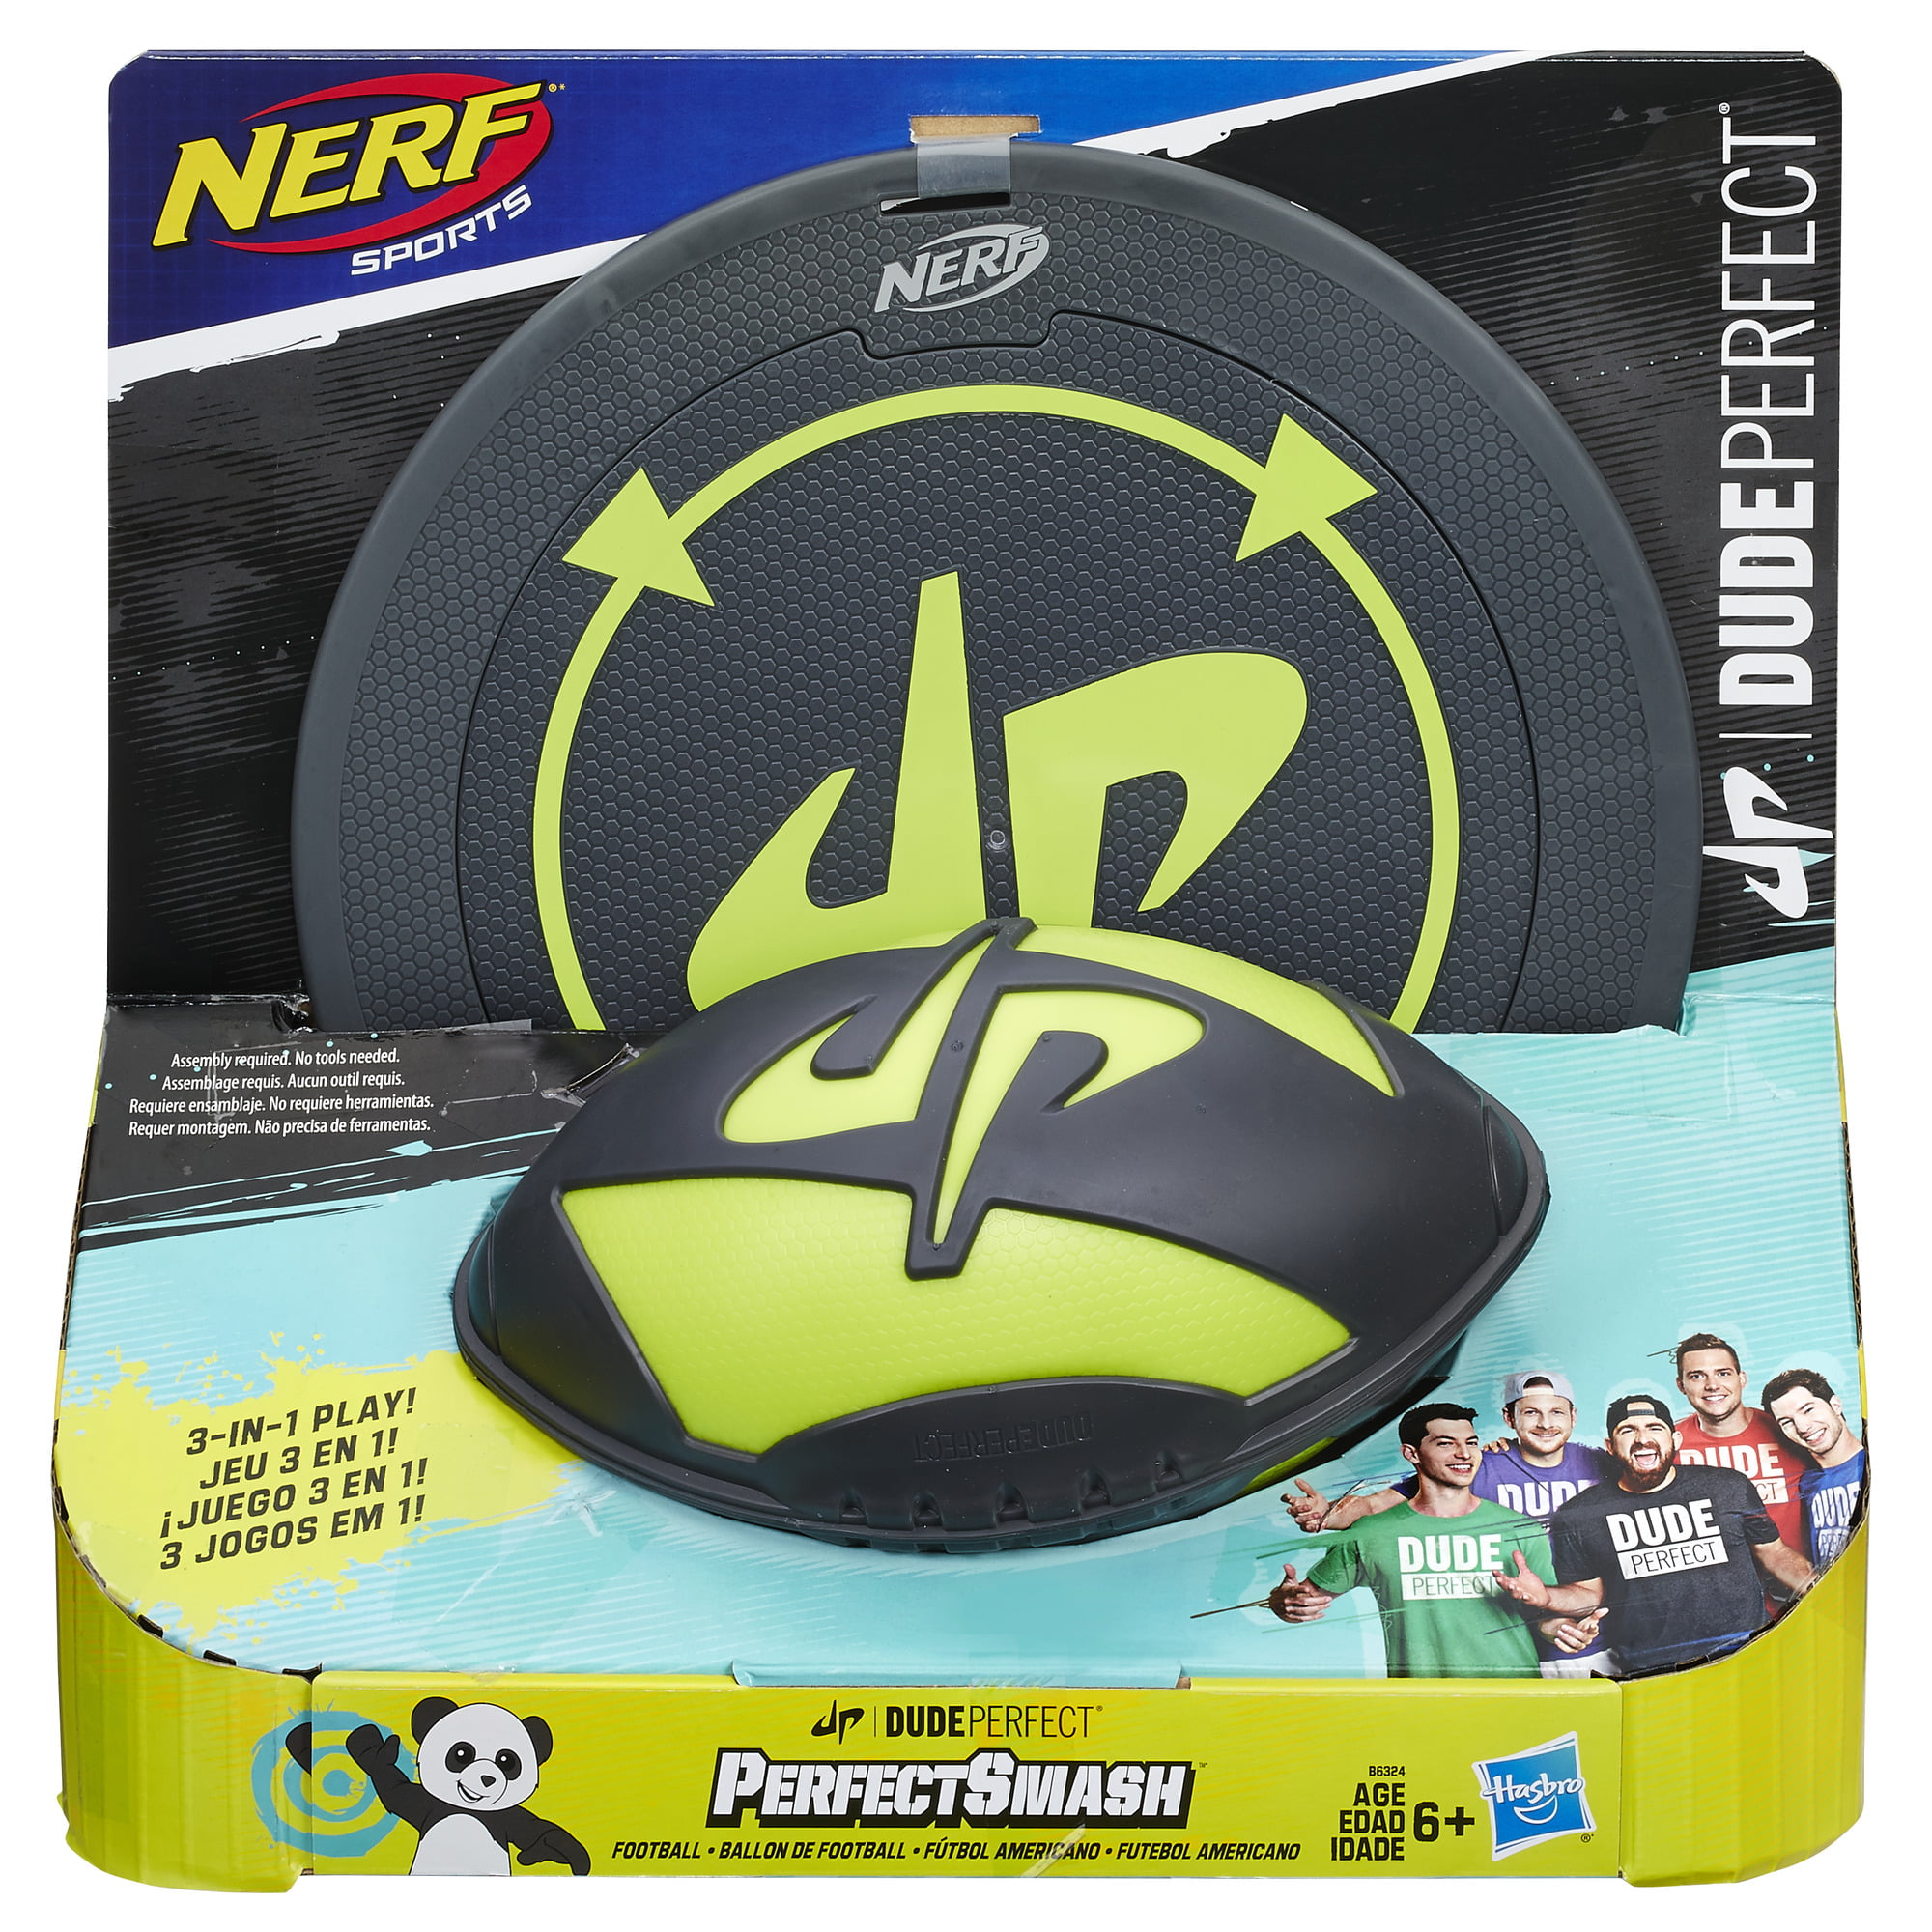 knude belønning spejl Nerf Sports Dude Perfect Smash Football - Walmart.com